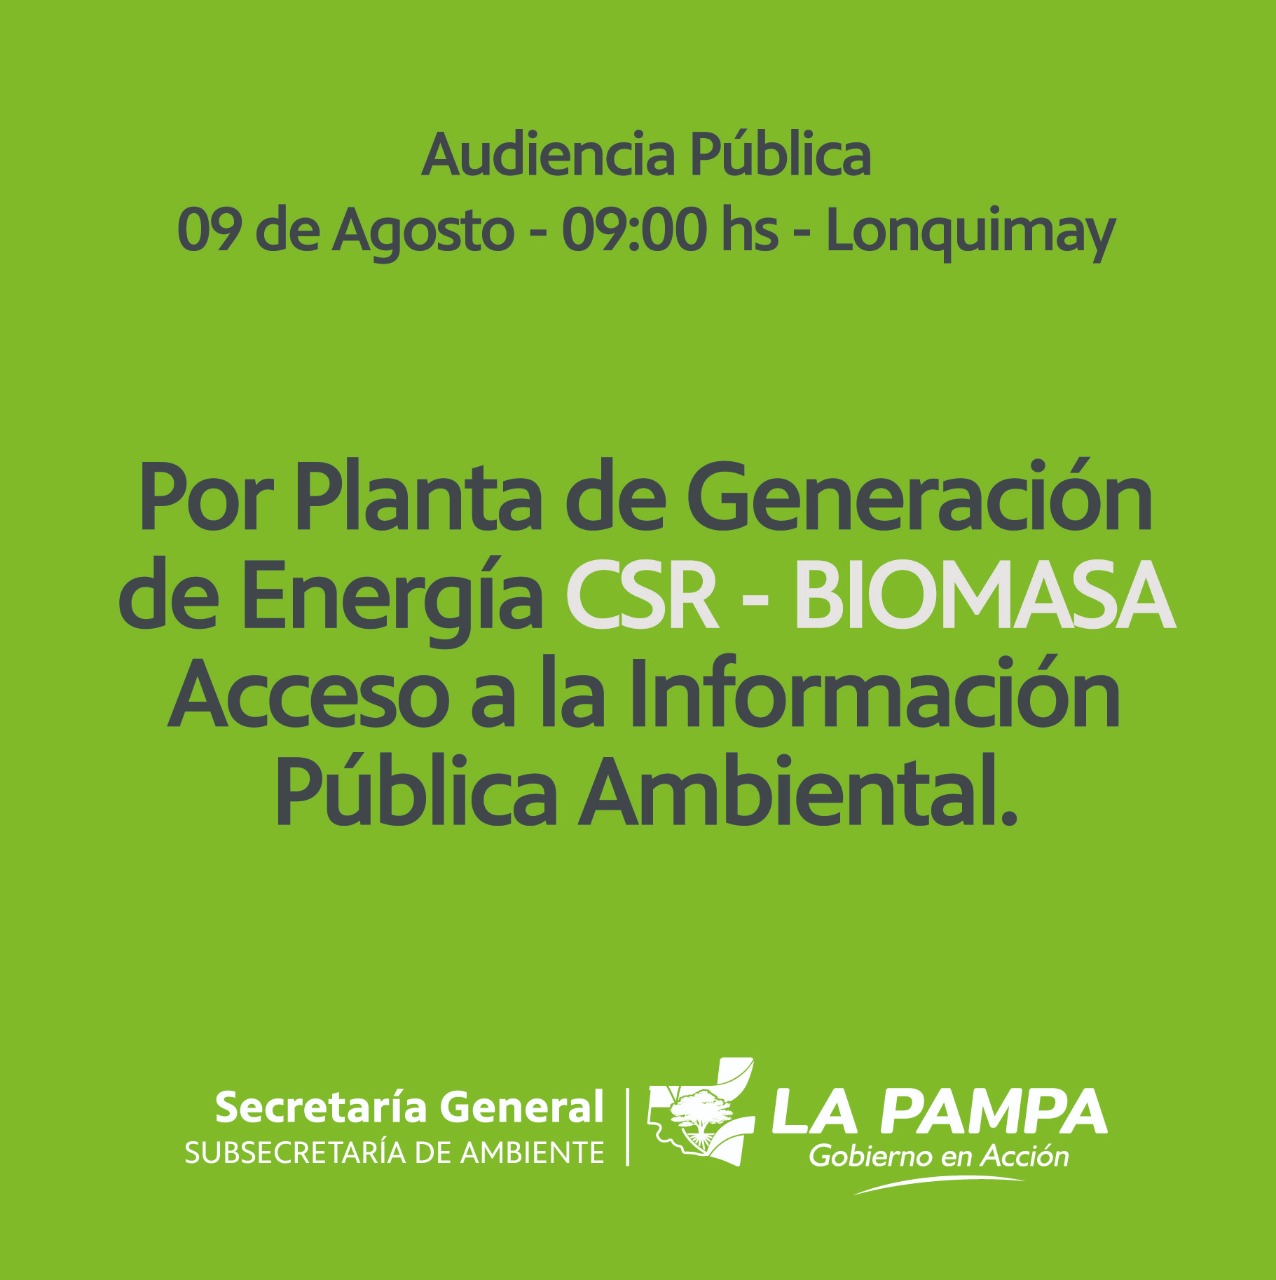 Recuerdan fecha de la audiencia pública por el proyecto de la planta de biomasa en Lonquimay 